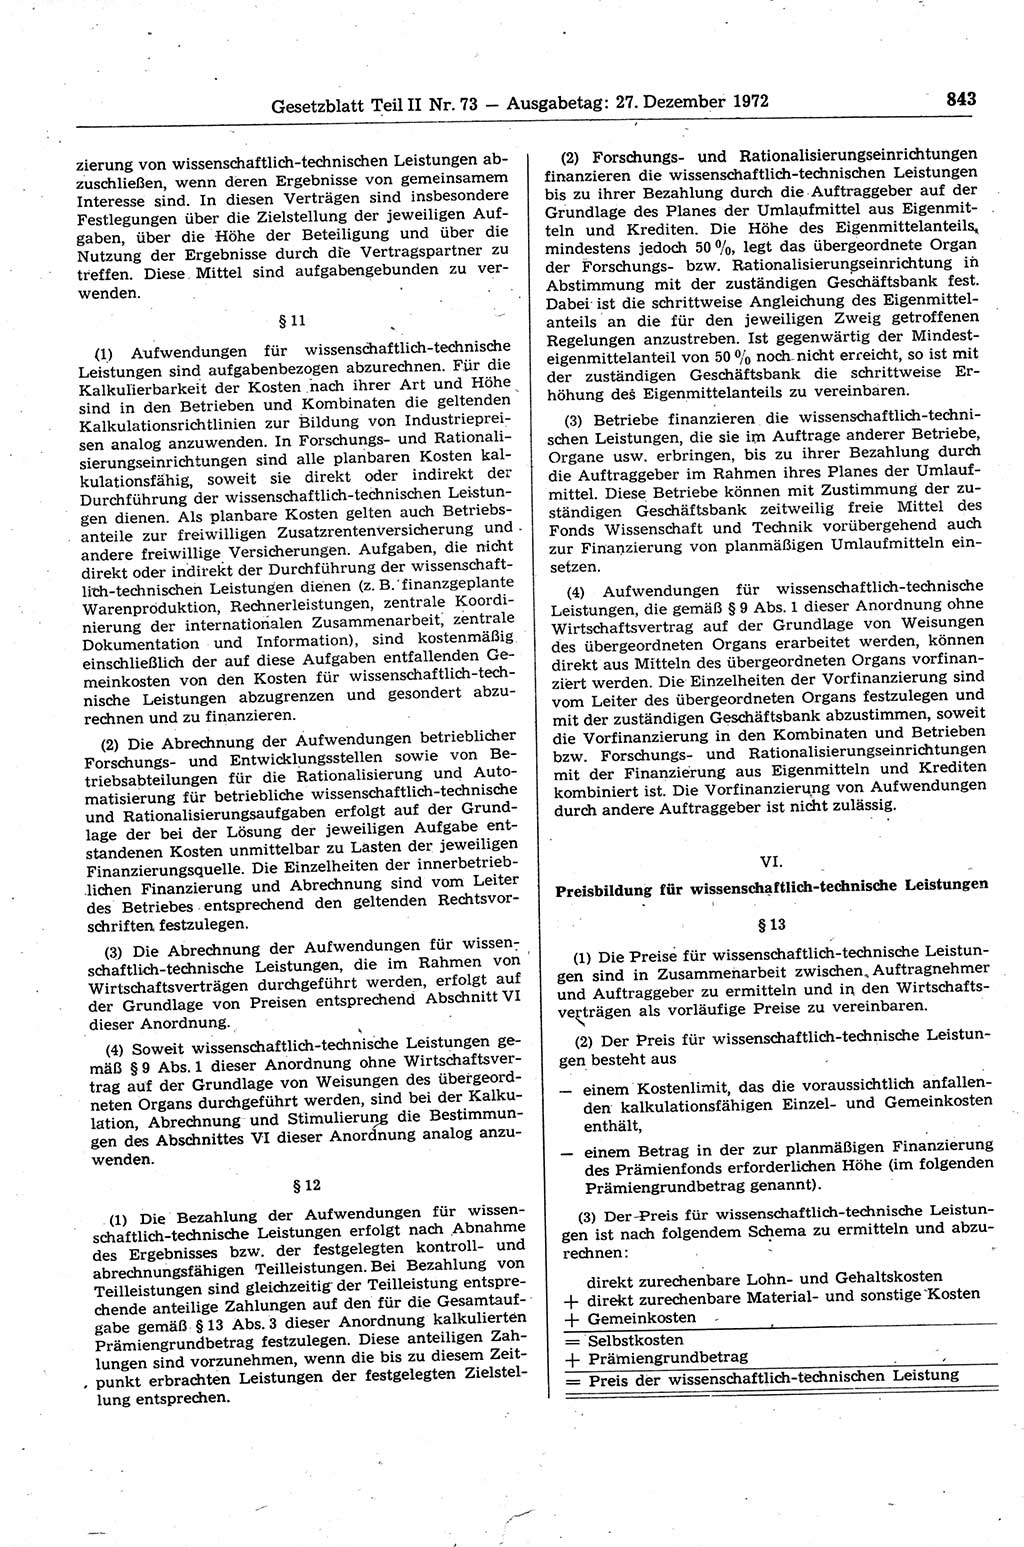 Gesetzblatt (GBl.) der Deutschen Demokratischen Republik (DDR) Teil ⅠⅠ 1972, Seite 843 (GBl. DDR ⅠⅠ 1972, S. 843)